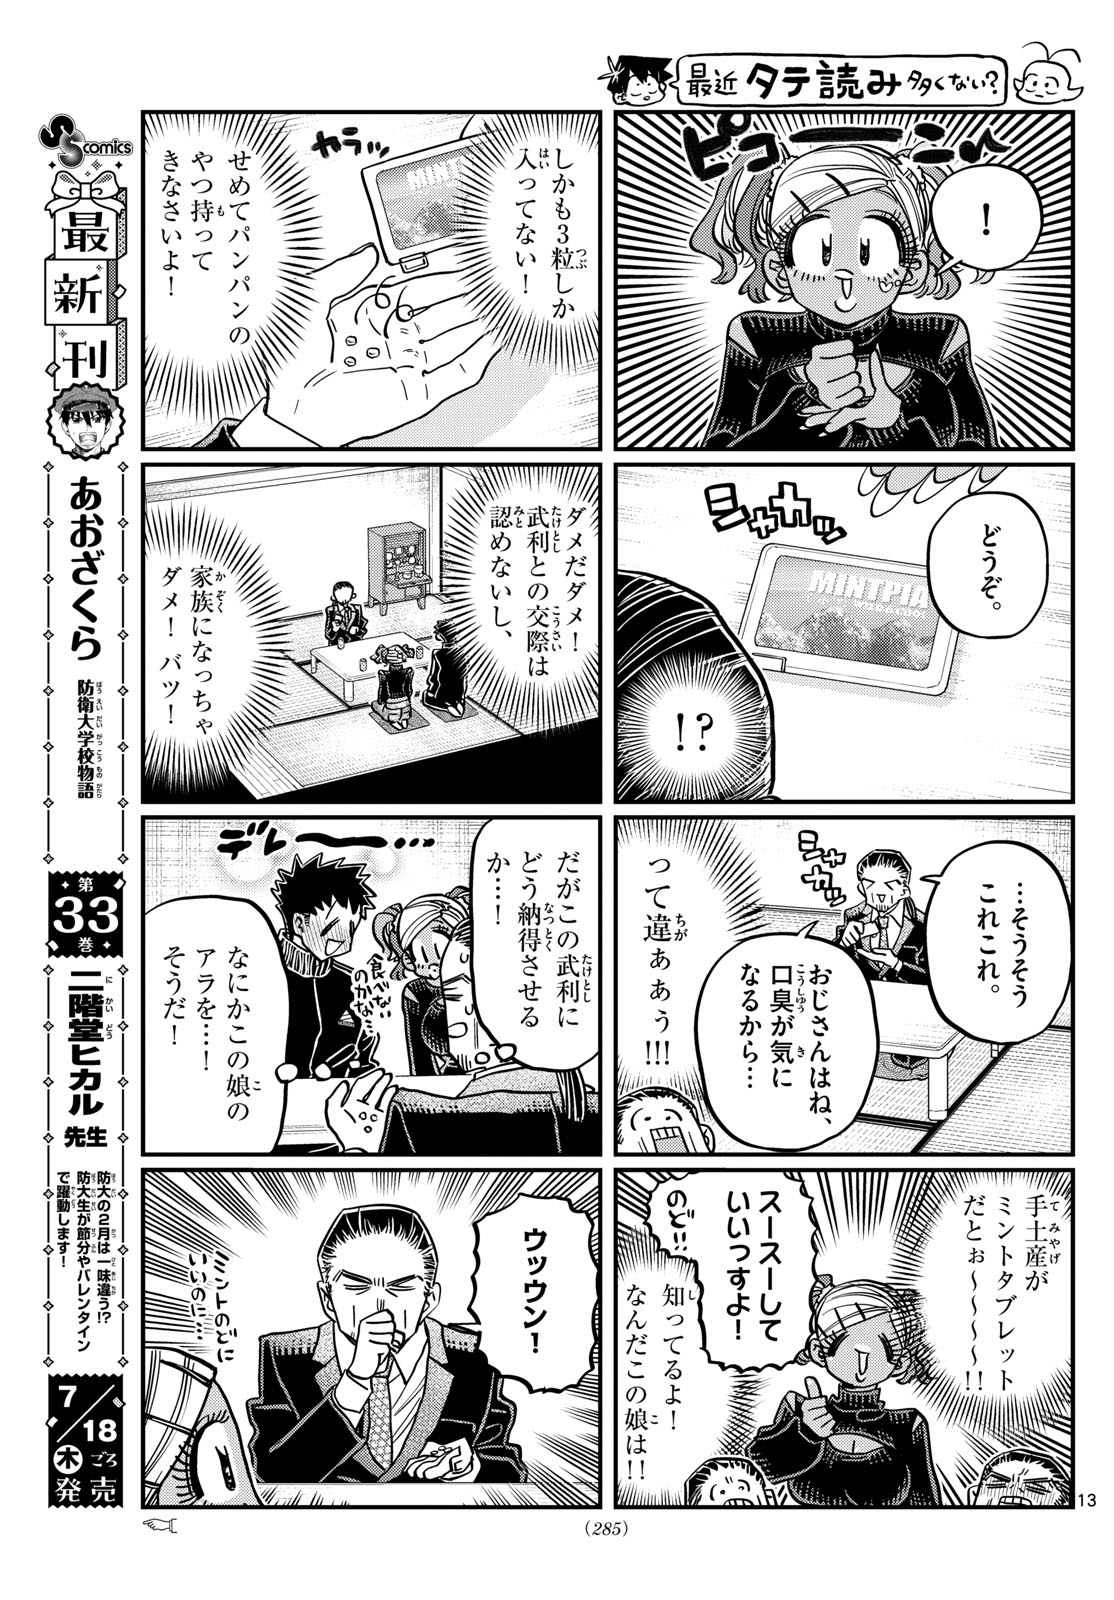 Komi-san wa Komyushou Desu - Chapter 469 - Page 3